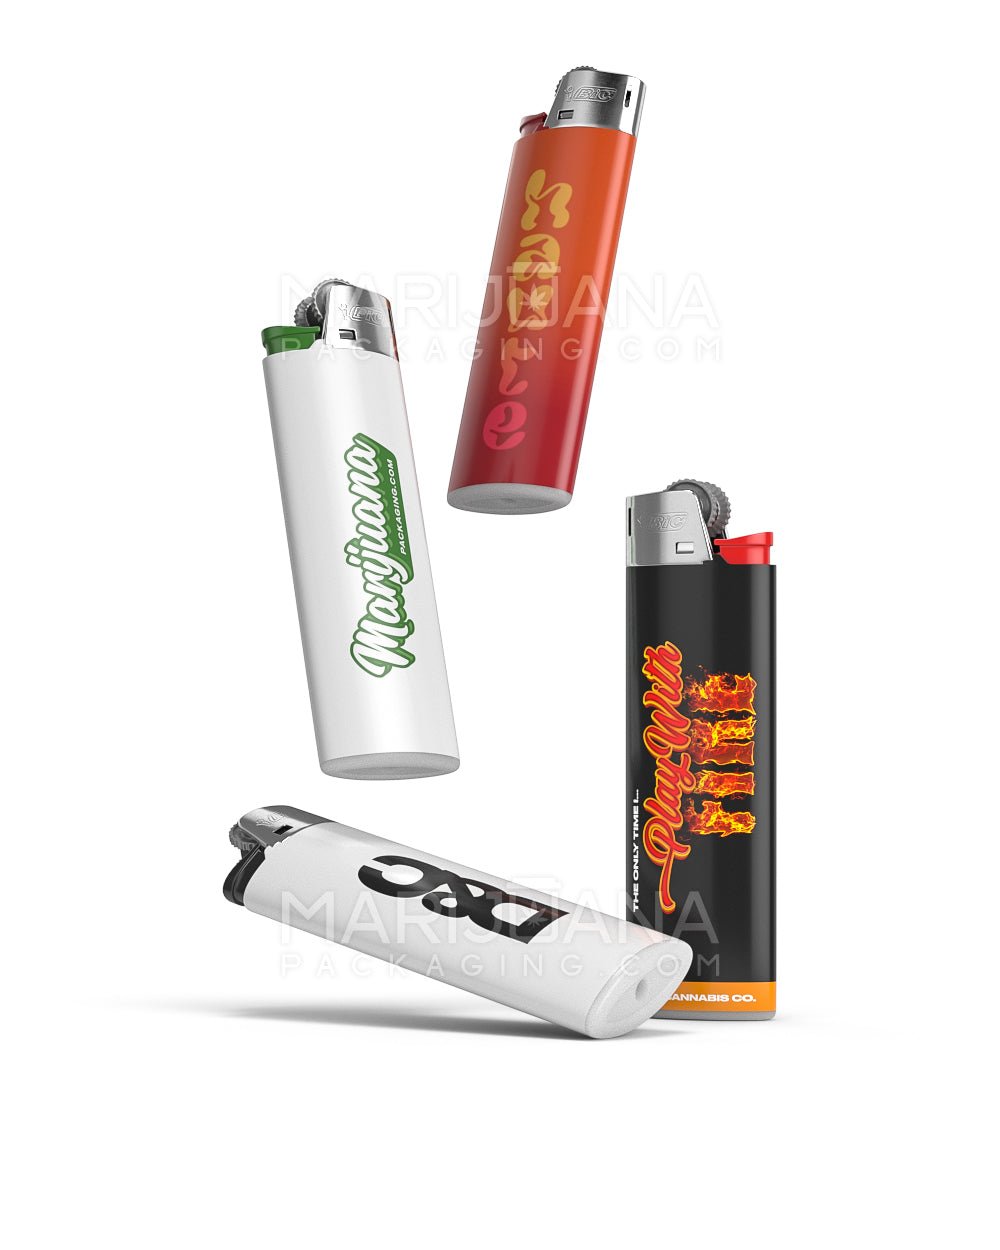 Custom BIC Lighters, BIC Lighters in Bulk